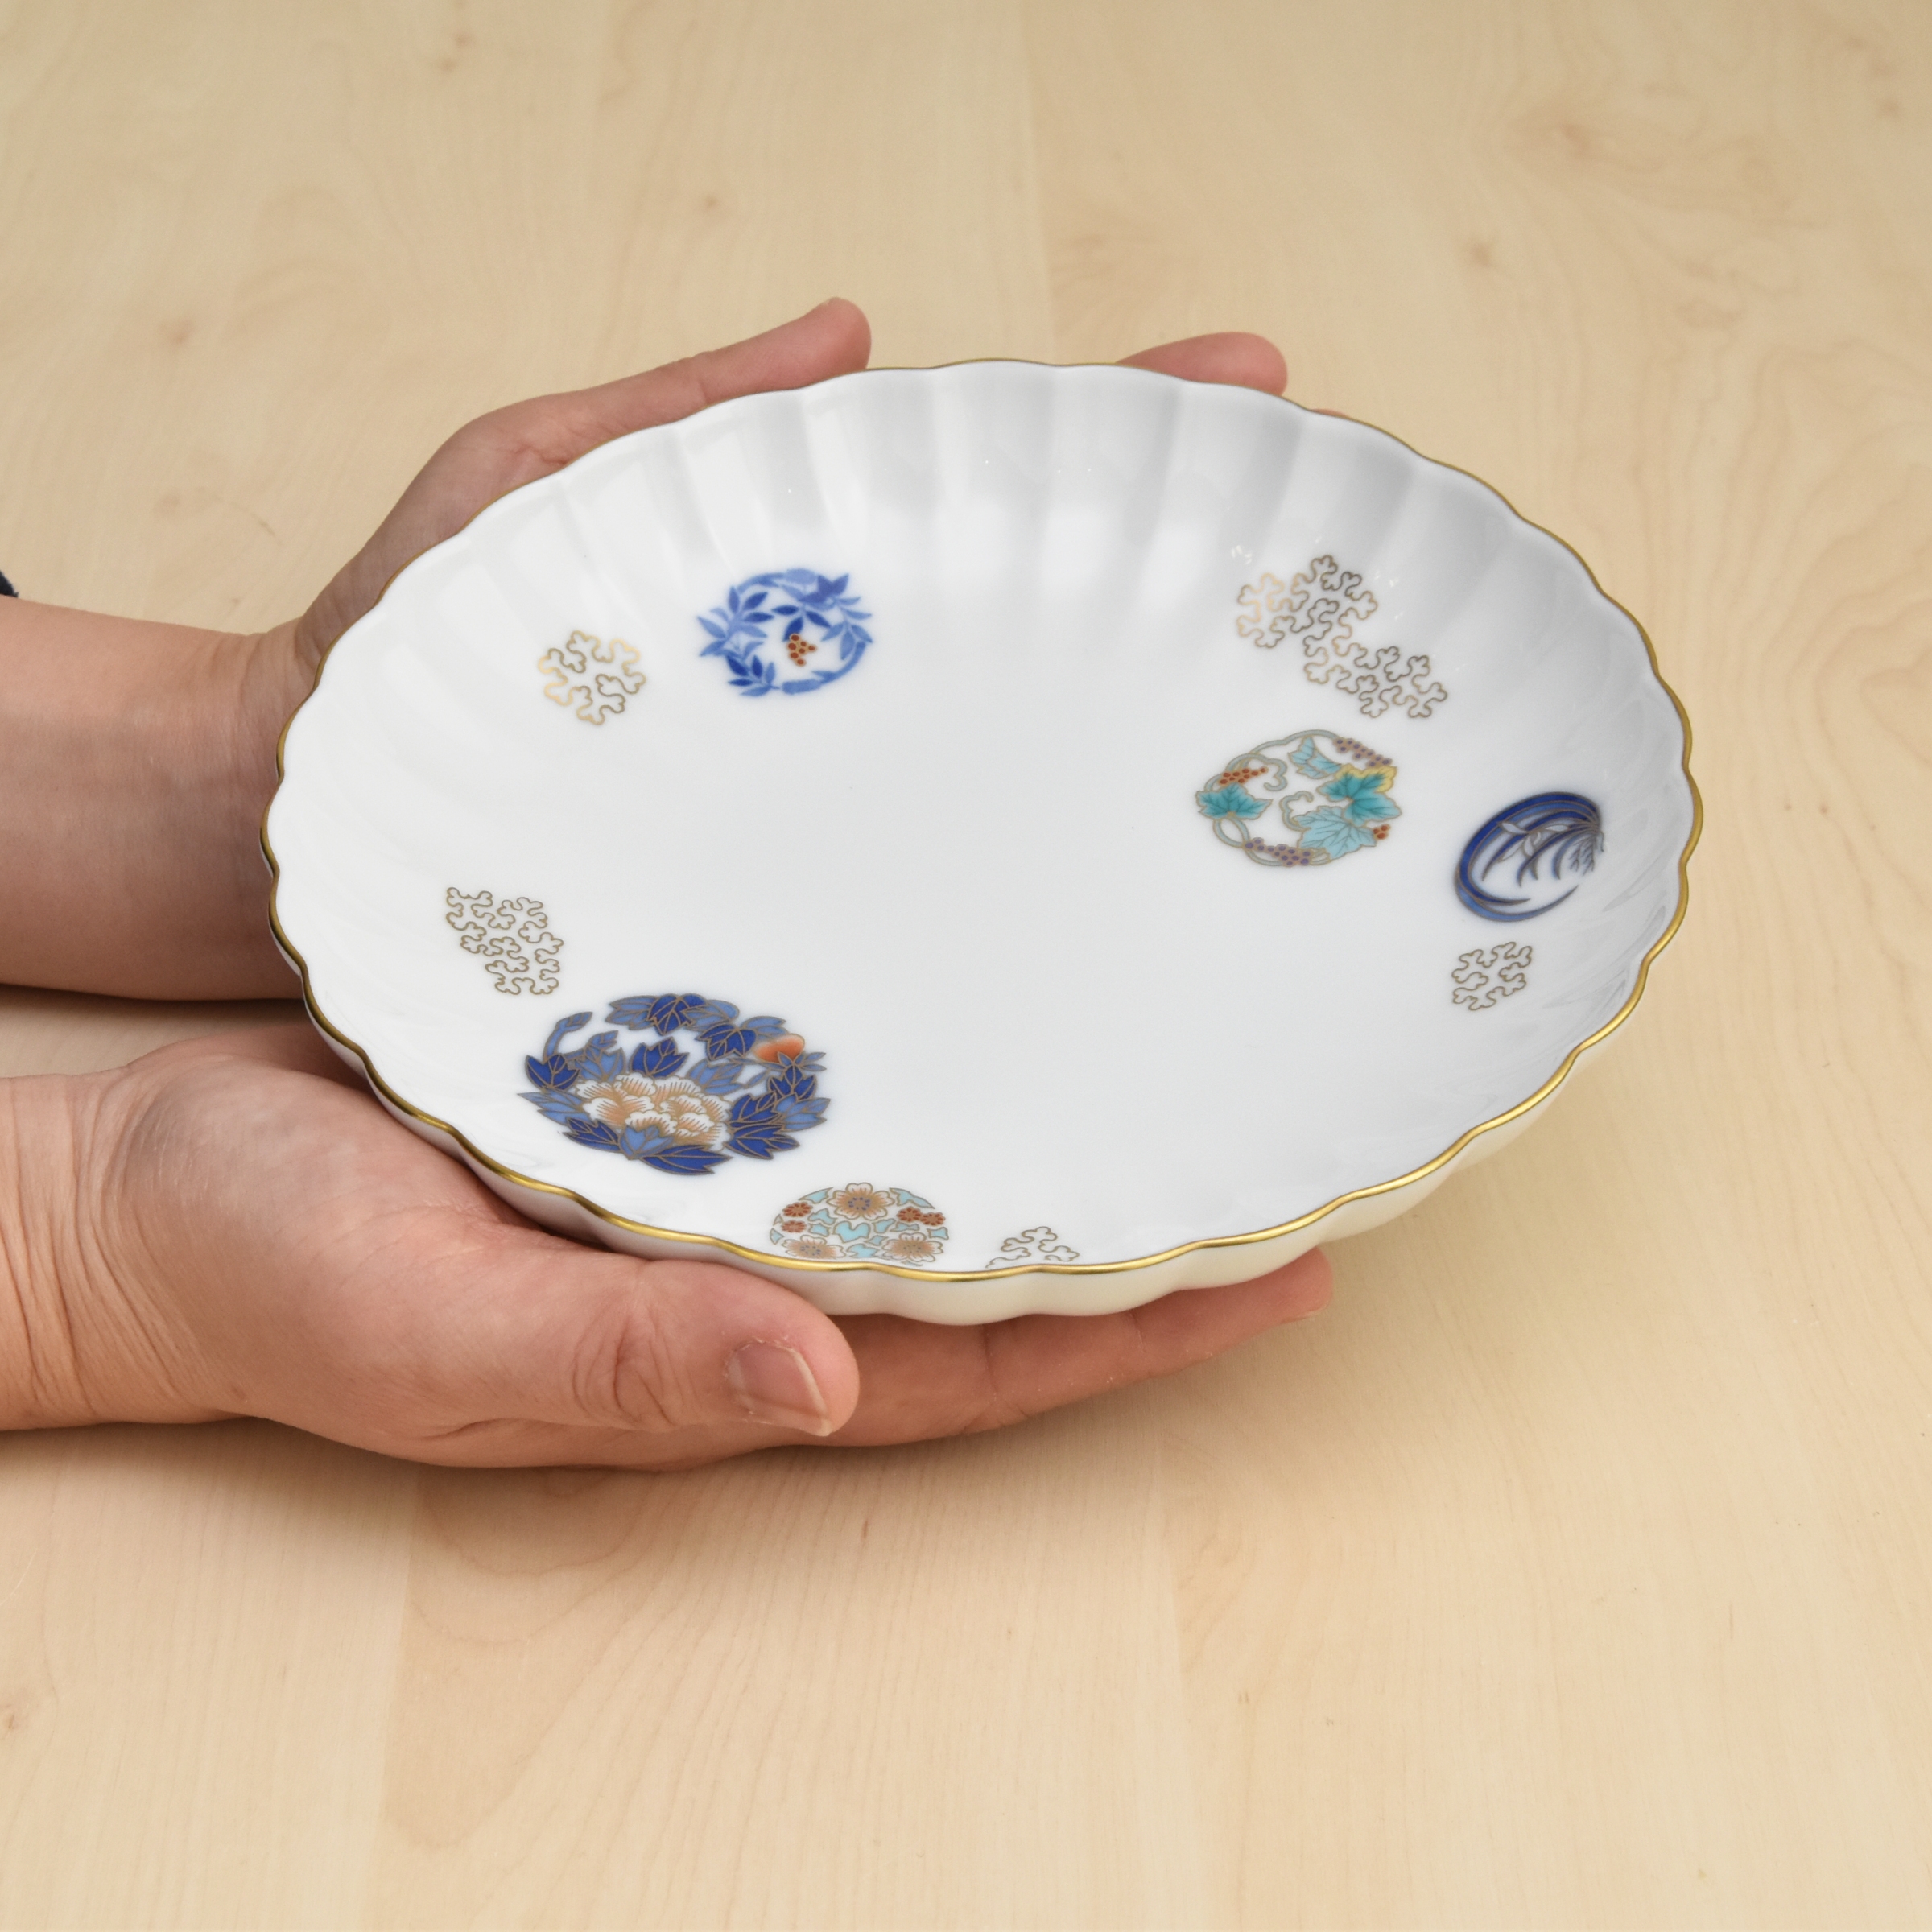 お皿は菊型になっていて、おしゃれです。取皿にしたりおひとり様分のおかずを入れたり使い勝手の良いサイズです。